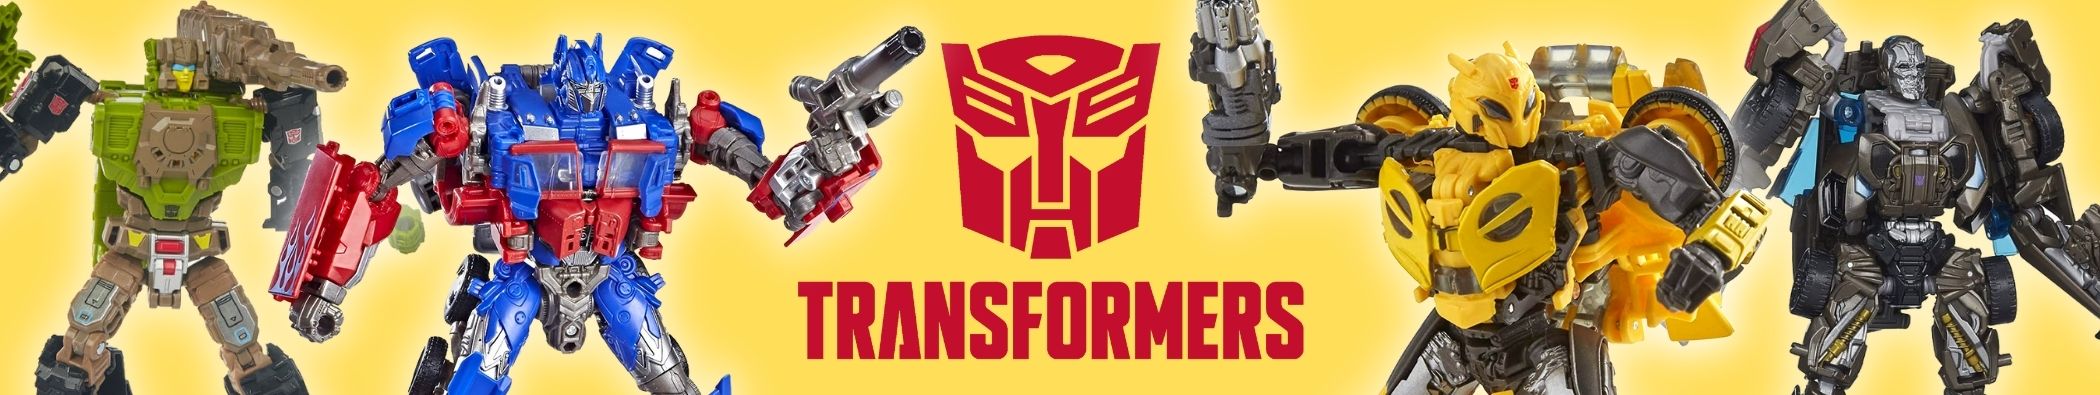 Bonecos e Figuras Transformers